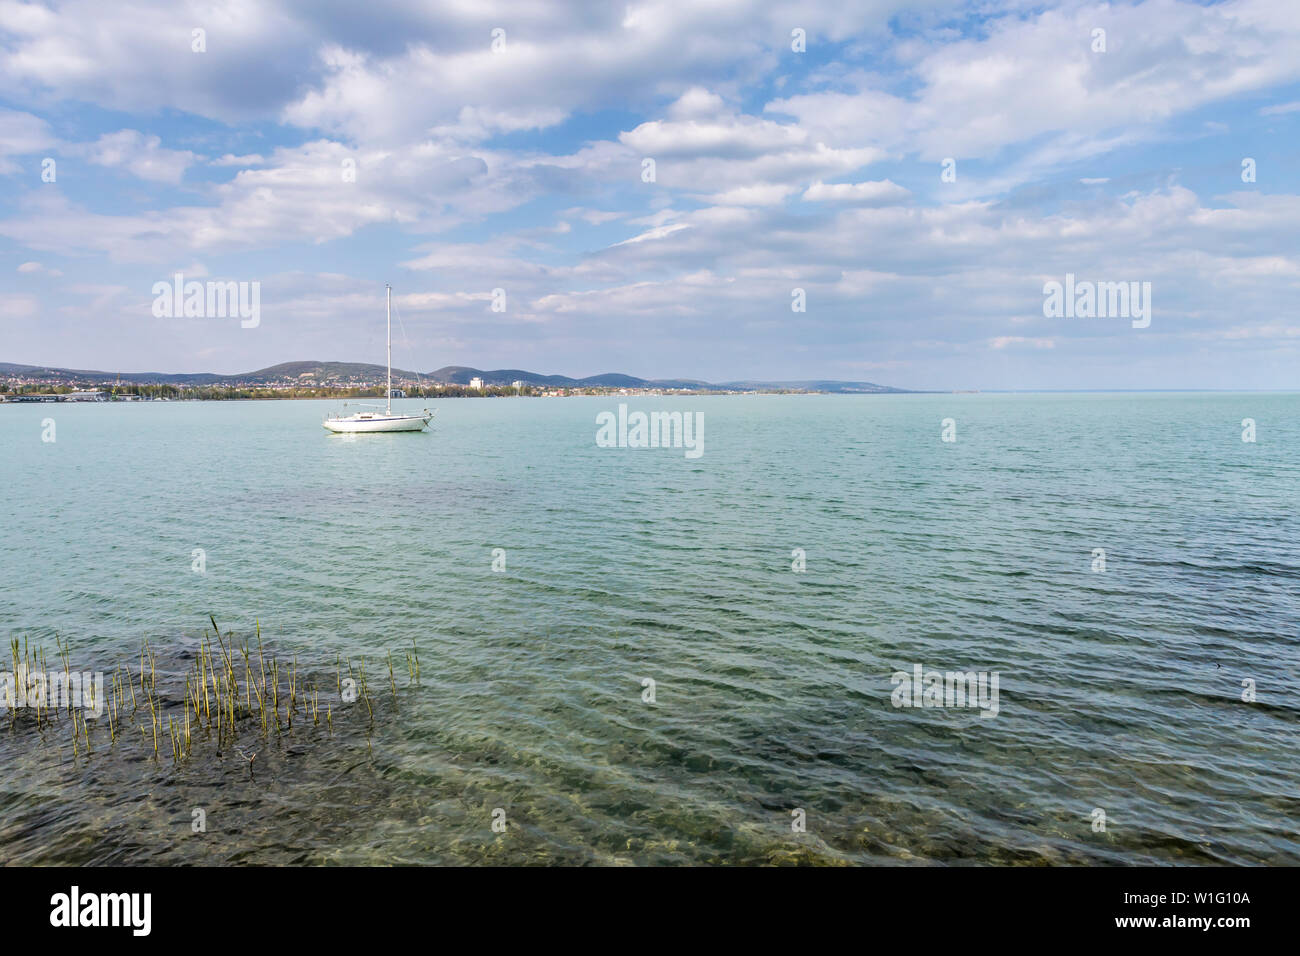 Sail boat moored at Tihany, Lake Balaton, Hungary Stock Photo